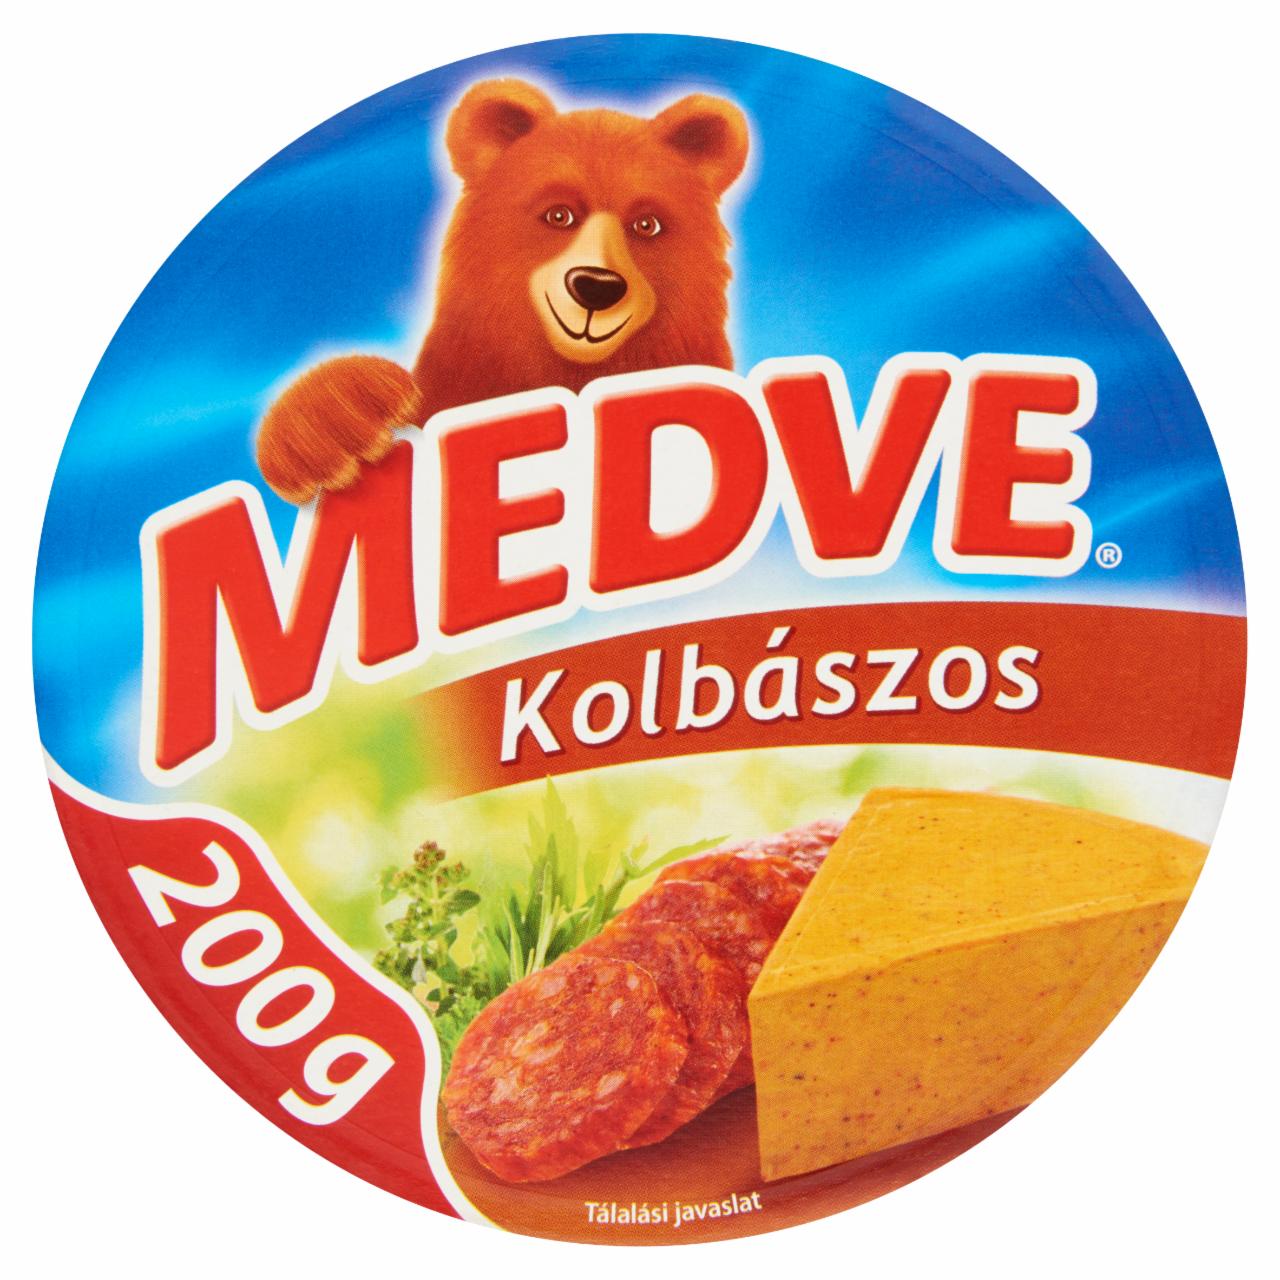 Képek - Medve kolbászos kenhető, félzsíros ömlesztett sajt 6 db 200 g